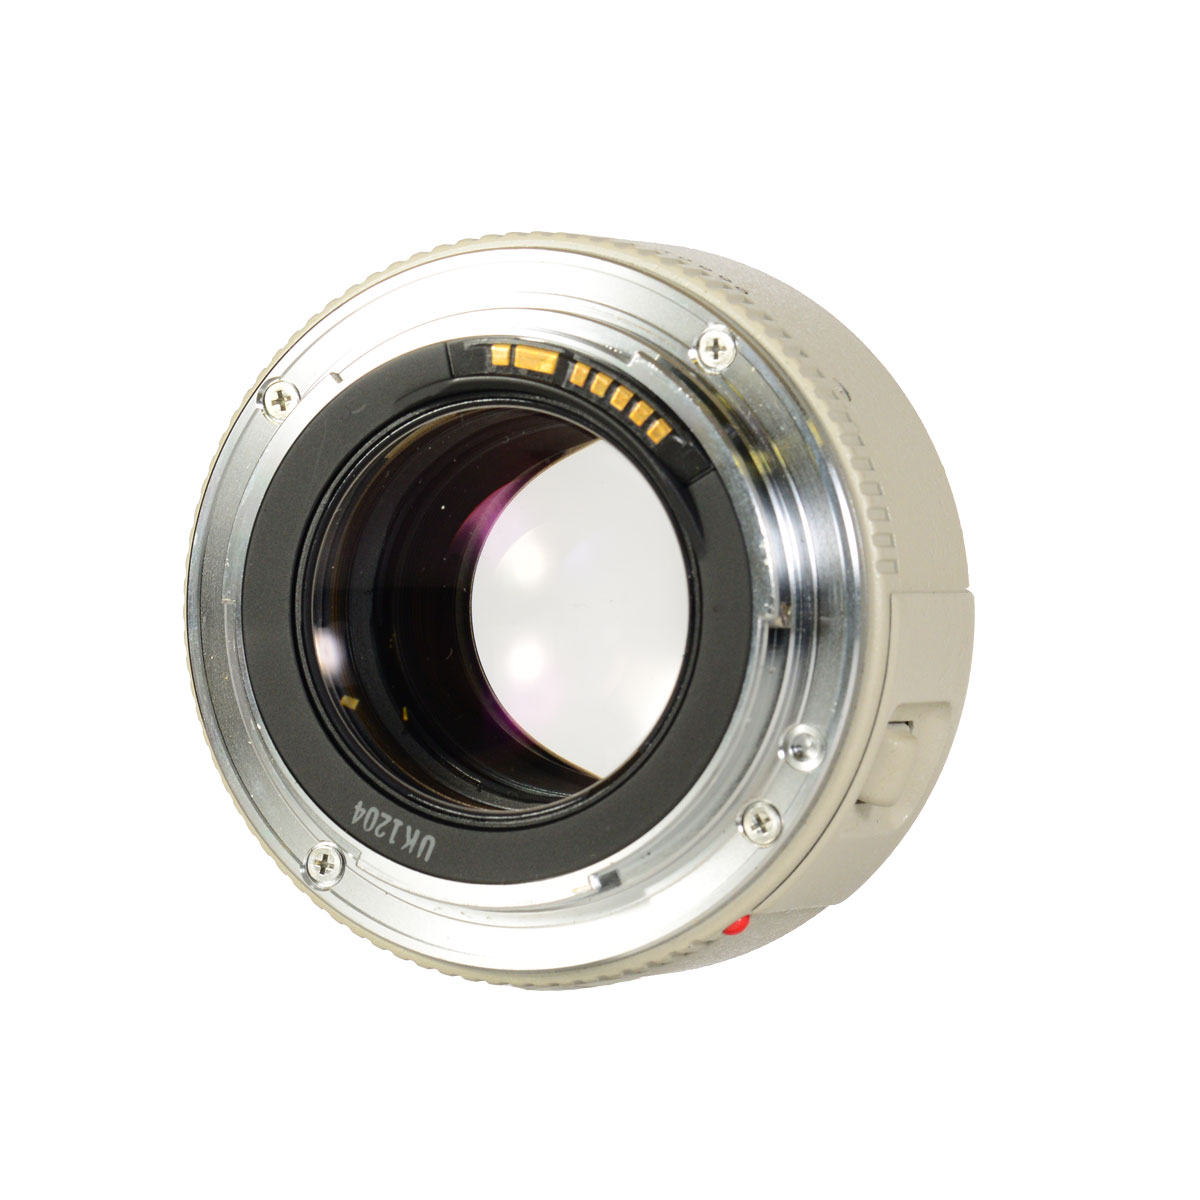 Конвертер Canon Extender EF 1.4x б/у